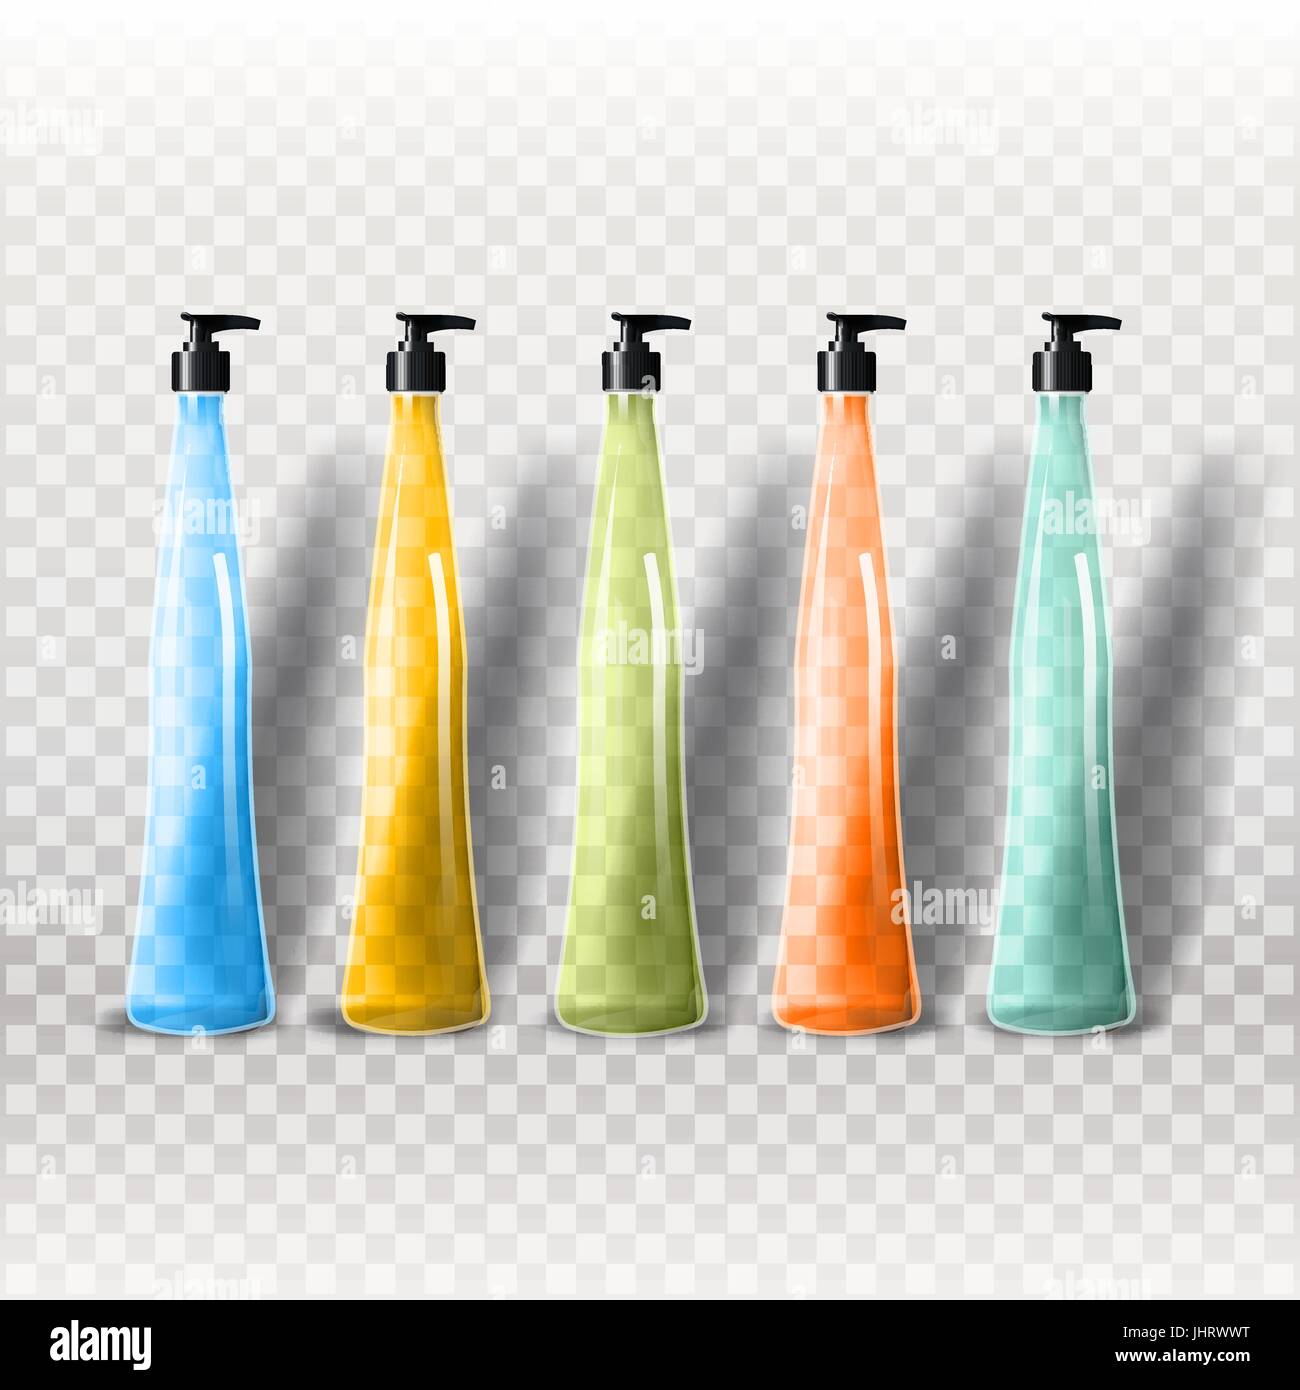 Mockup modello per il branding e il design dei prodotti. Isolato realistico bottiglie in vetro trasparente con erogatore spray e design esclusivo. Illustrazione Vettoriale